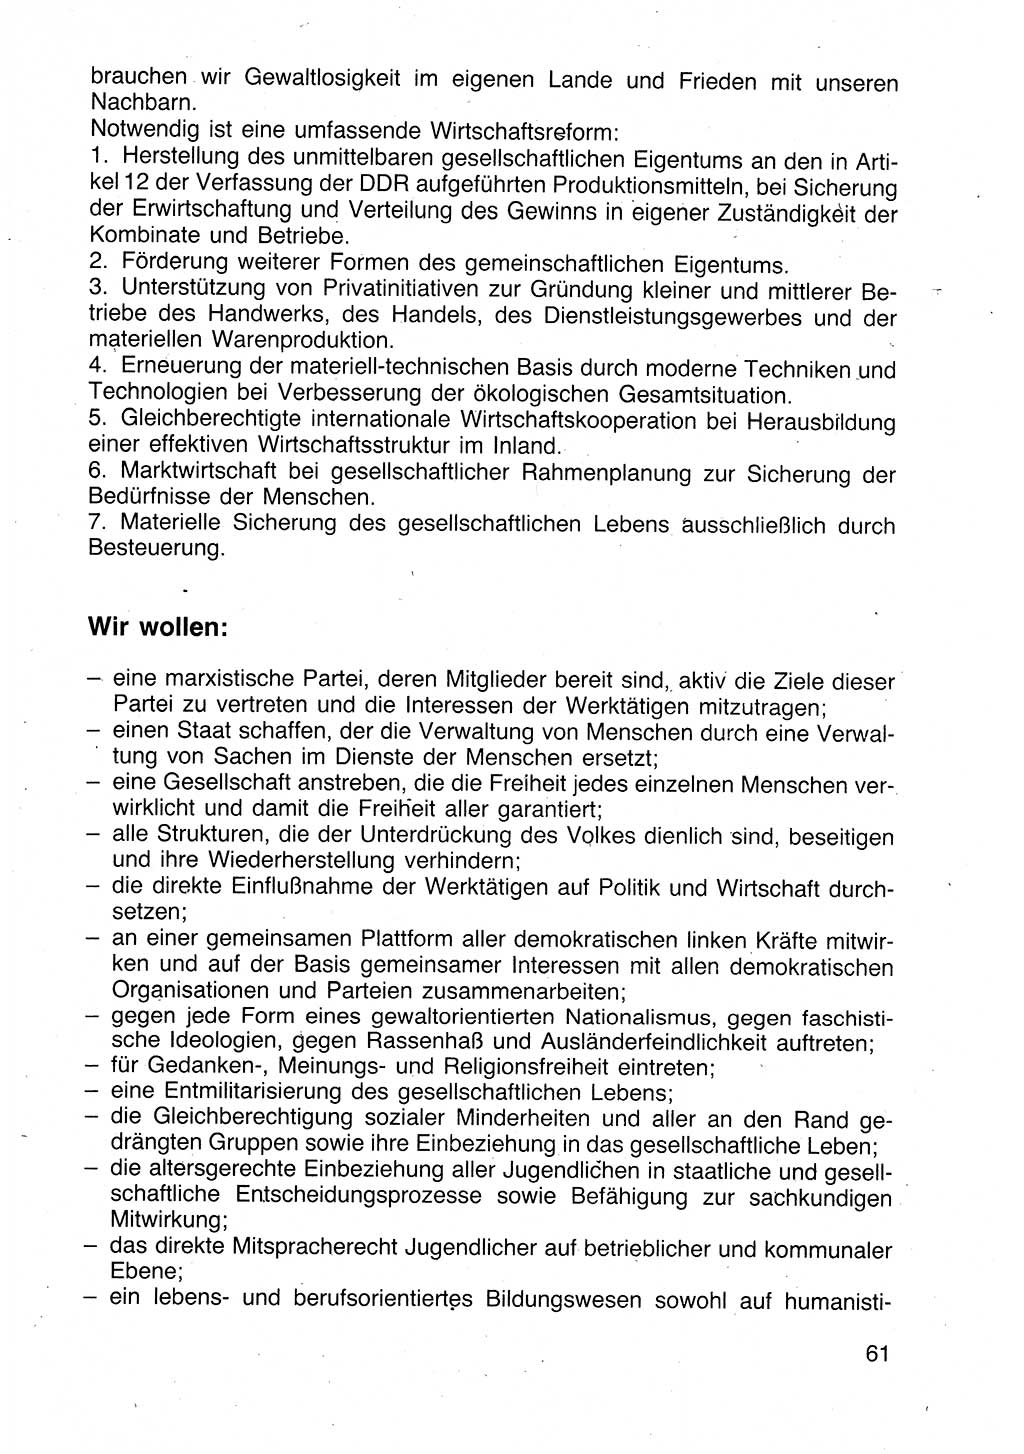 Politische Parteien und Bewegungen der DDR (Deutsche Demokratische Republik) über sich selbst 1990, Seite 61 (Pol. Part. Bew. DDR 1990, S. 61)